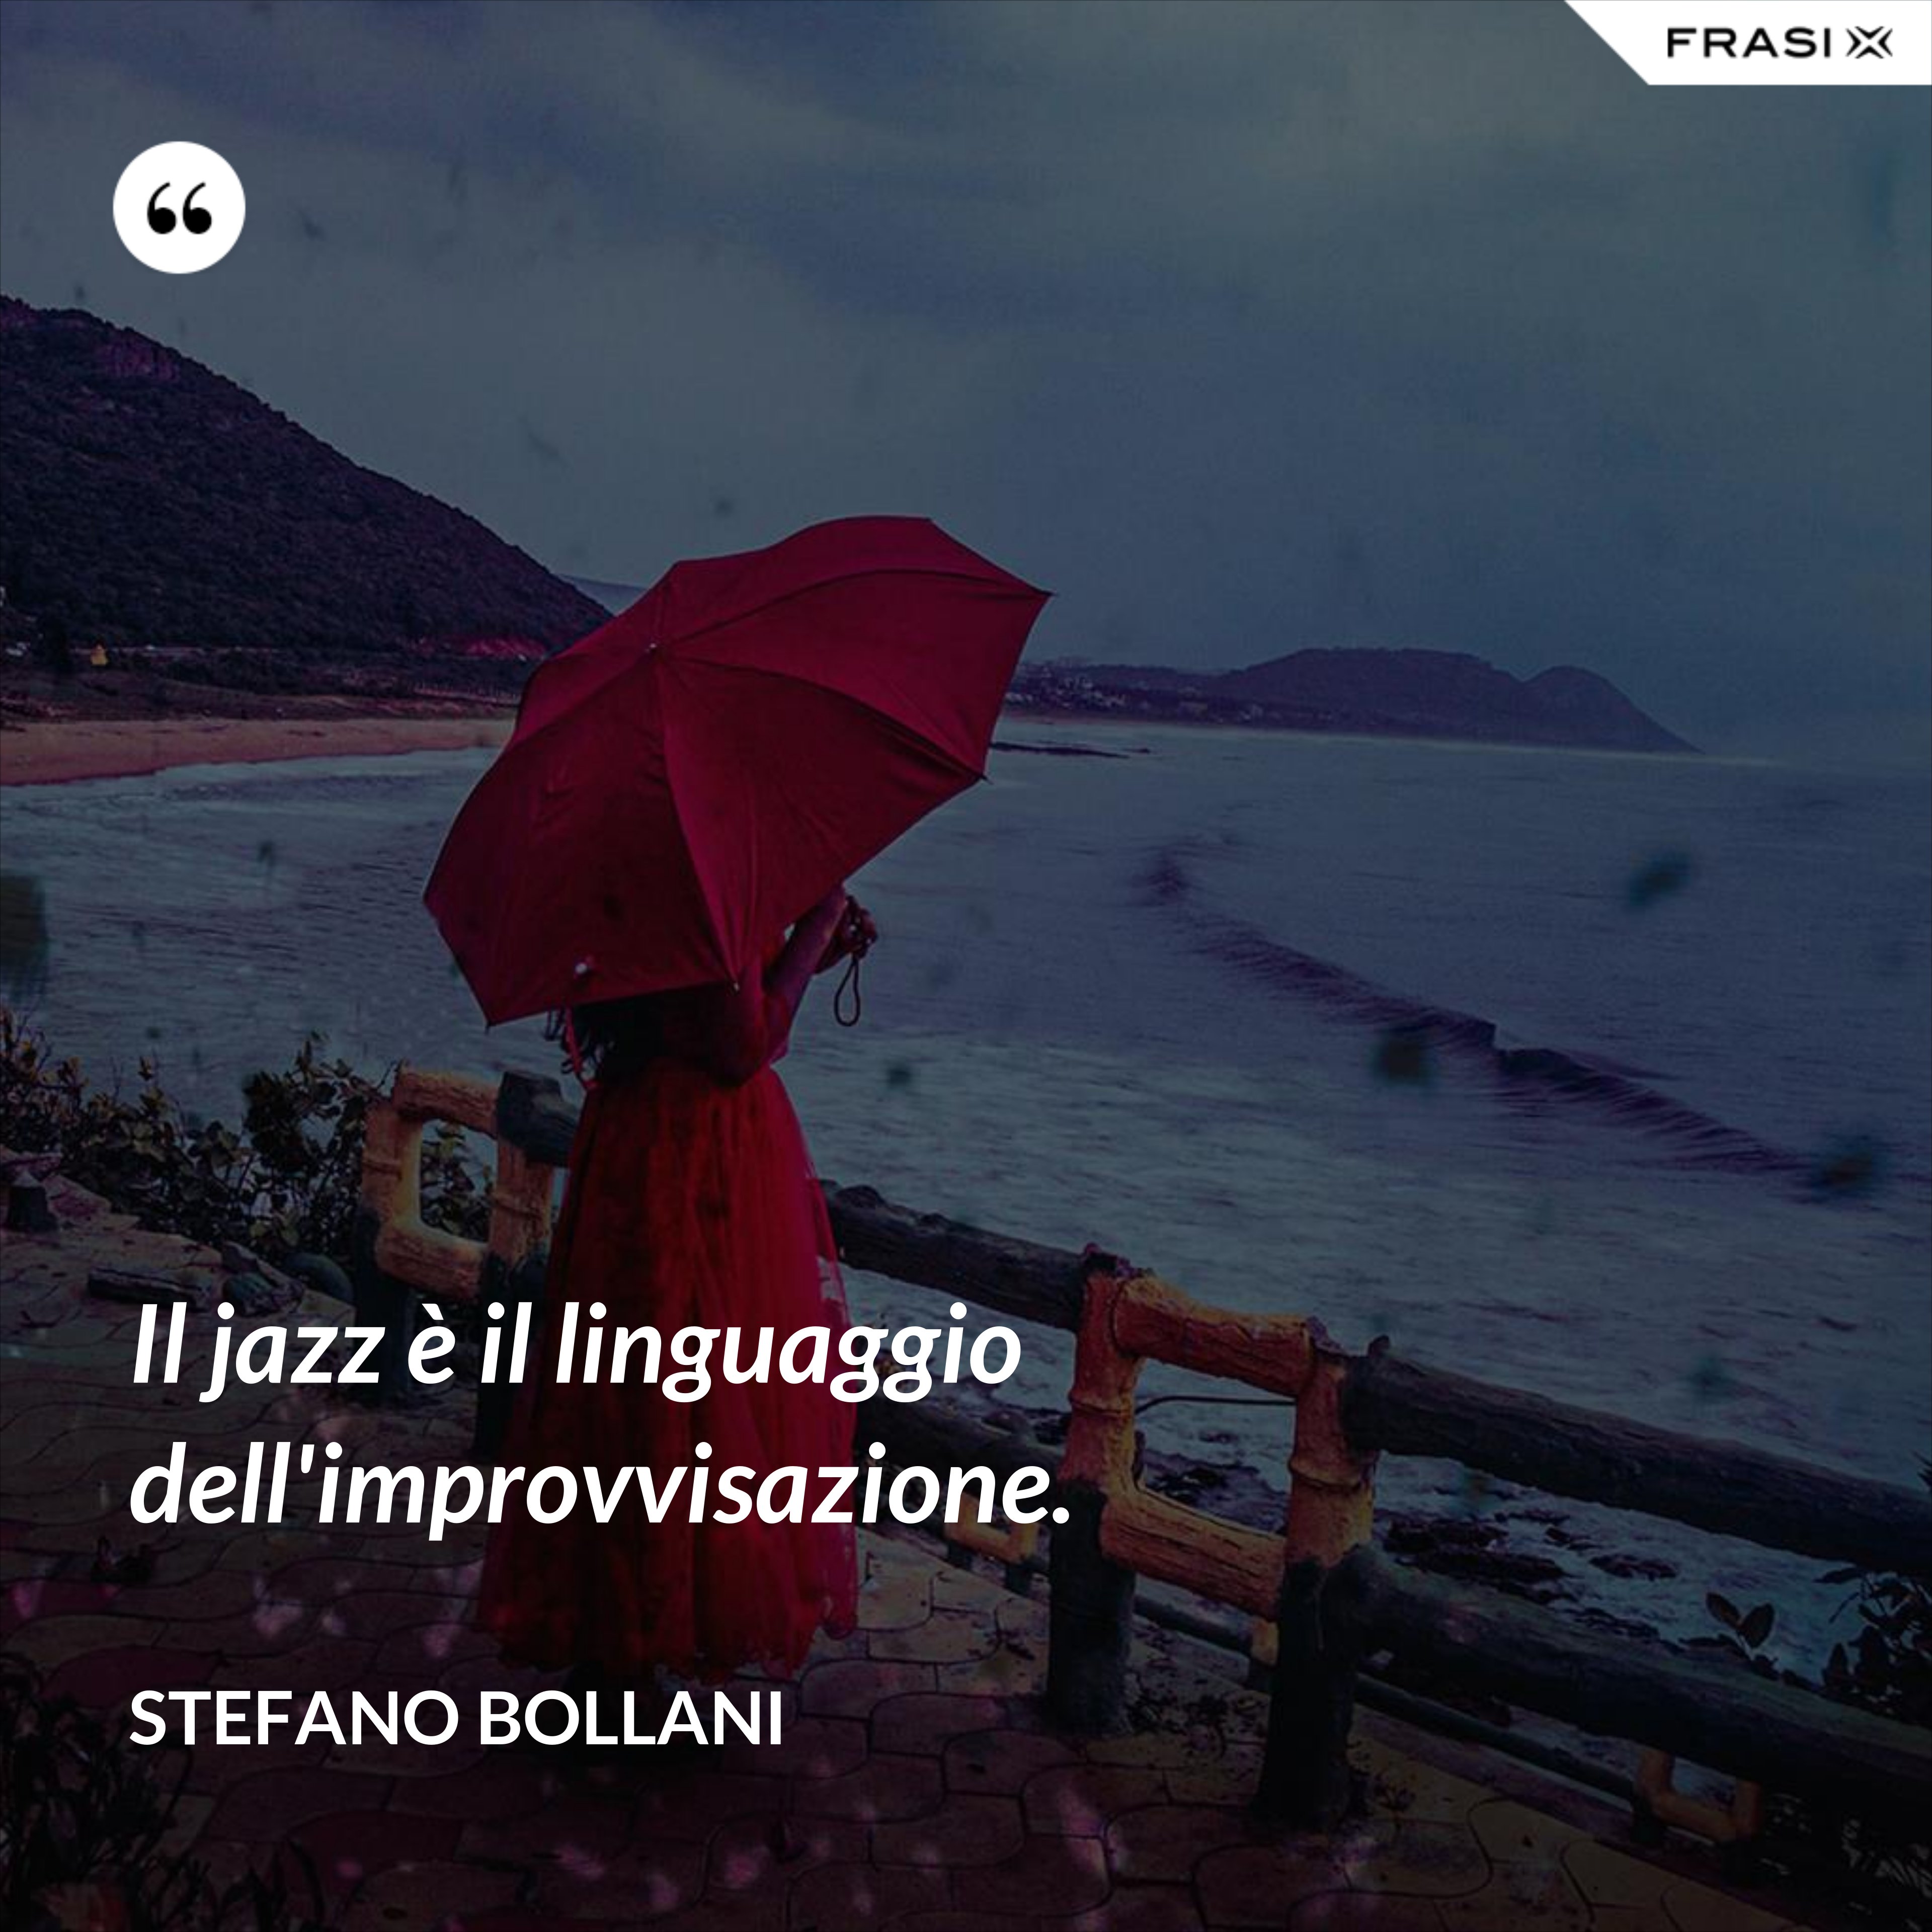 Il jazz è il linguaggio dell'improvvisazione. - Stefano Bollani